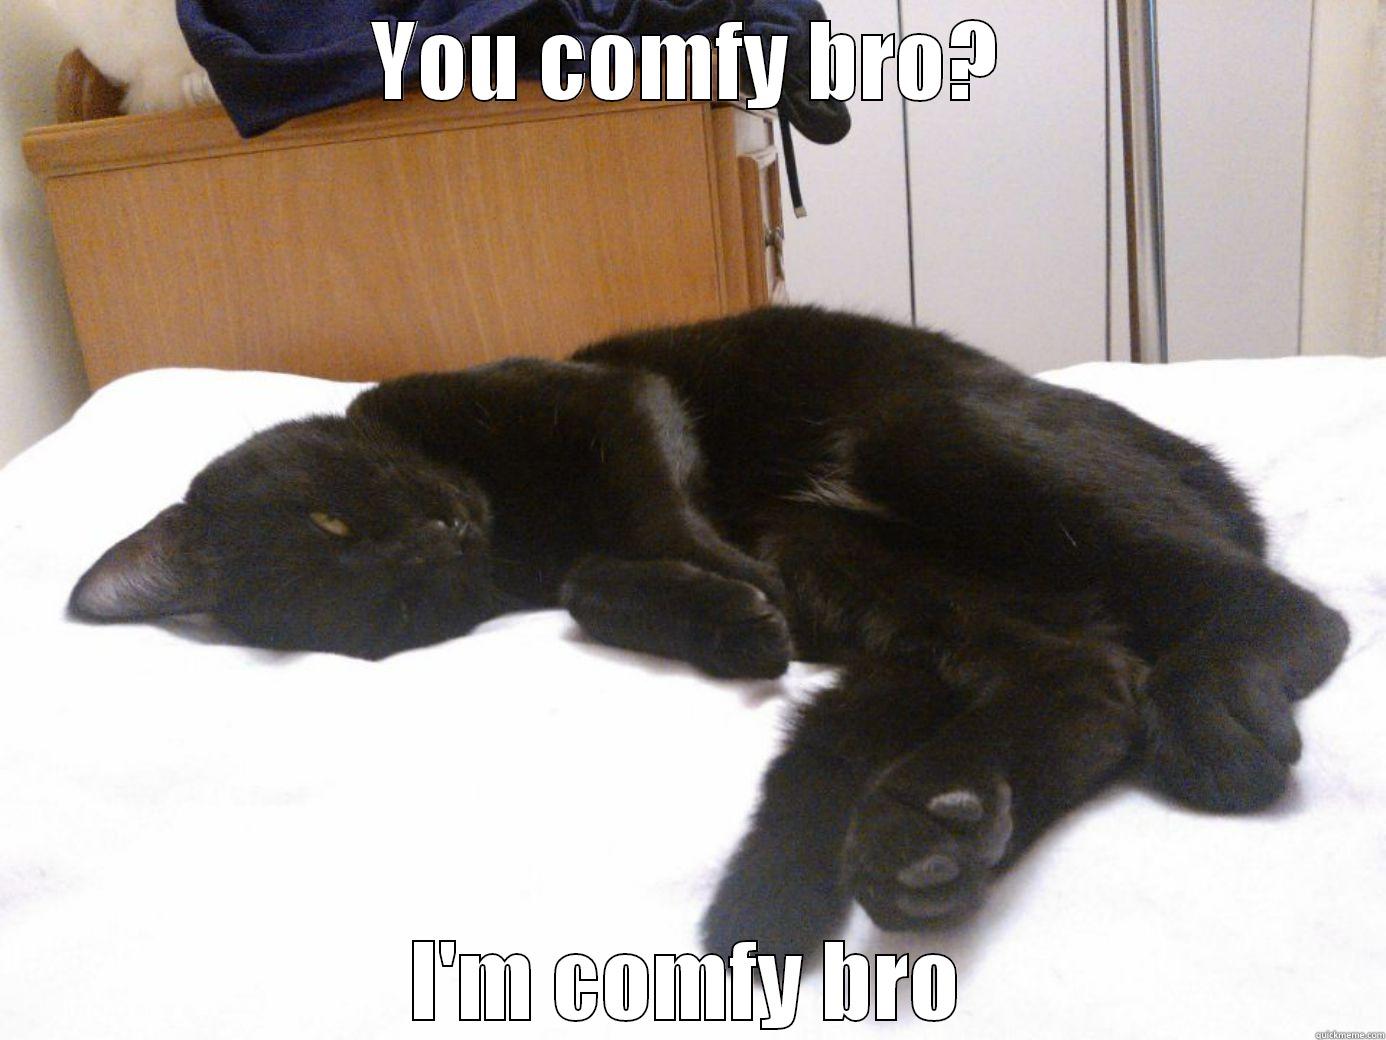 comfy cat is comfy - YOU COMFY BRO? I'M COMFY BRO Misc